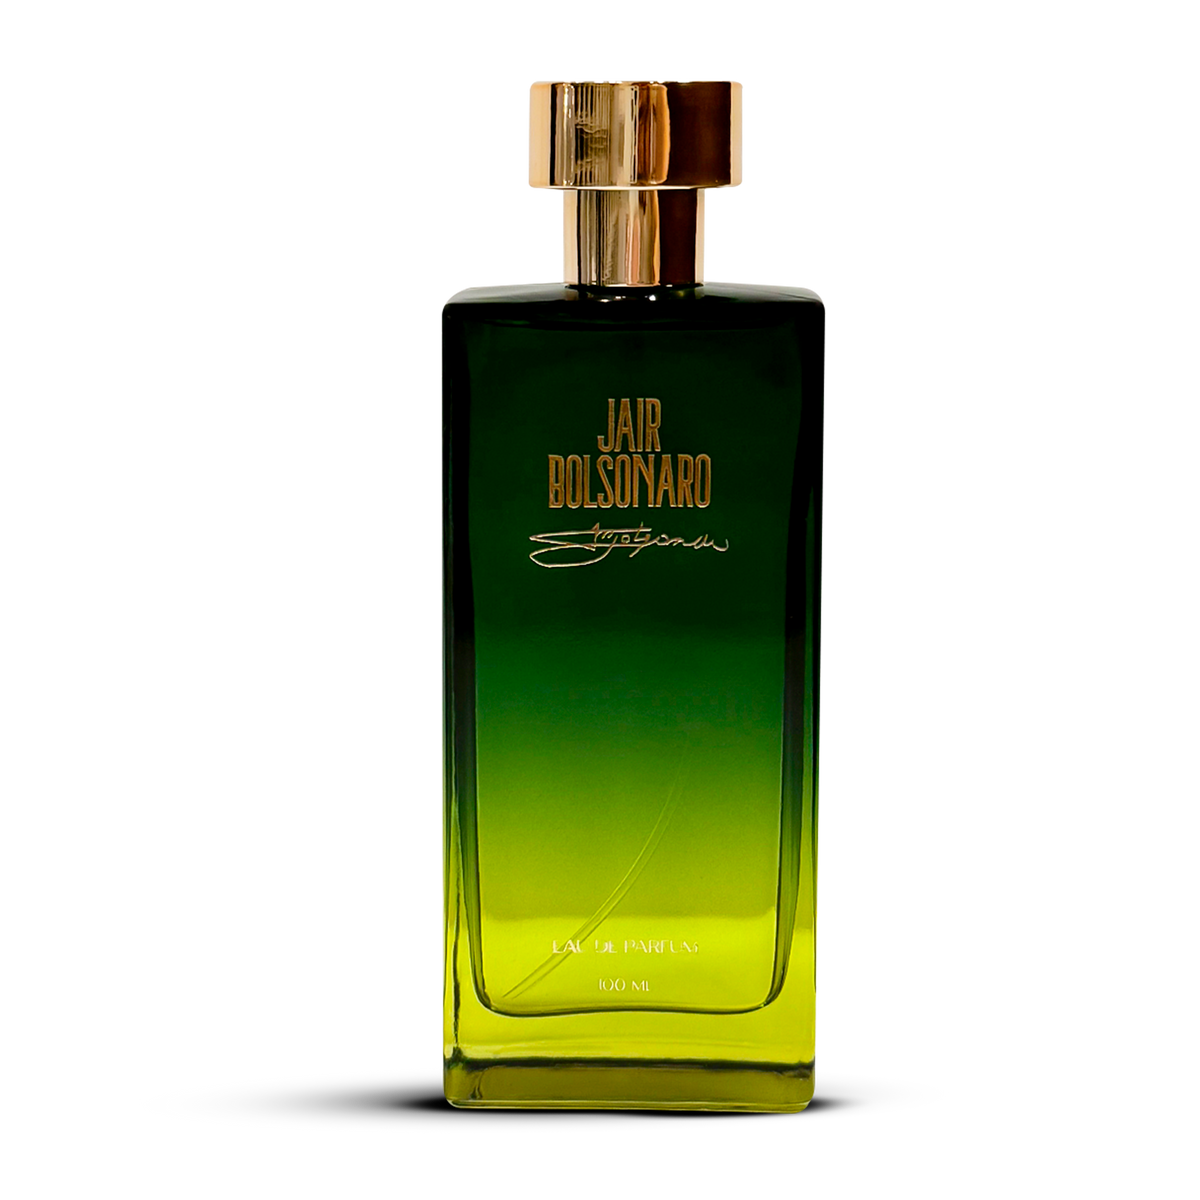 Perfume JB Eau de Parfum 100ml  + FRETE GRÁTIS + [FRASCO DO PERFUME AUTOGRAFADO A MÃO VÁLIDO APENAS HOJE]